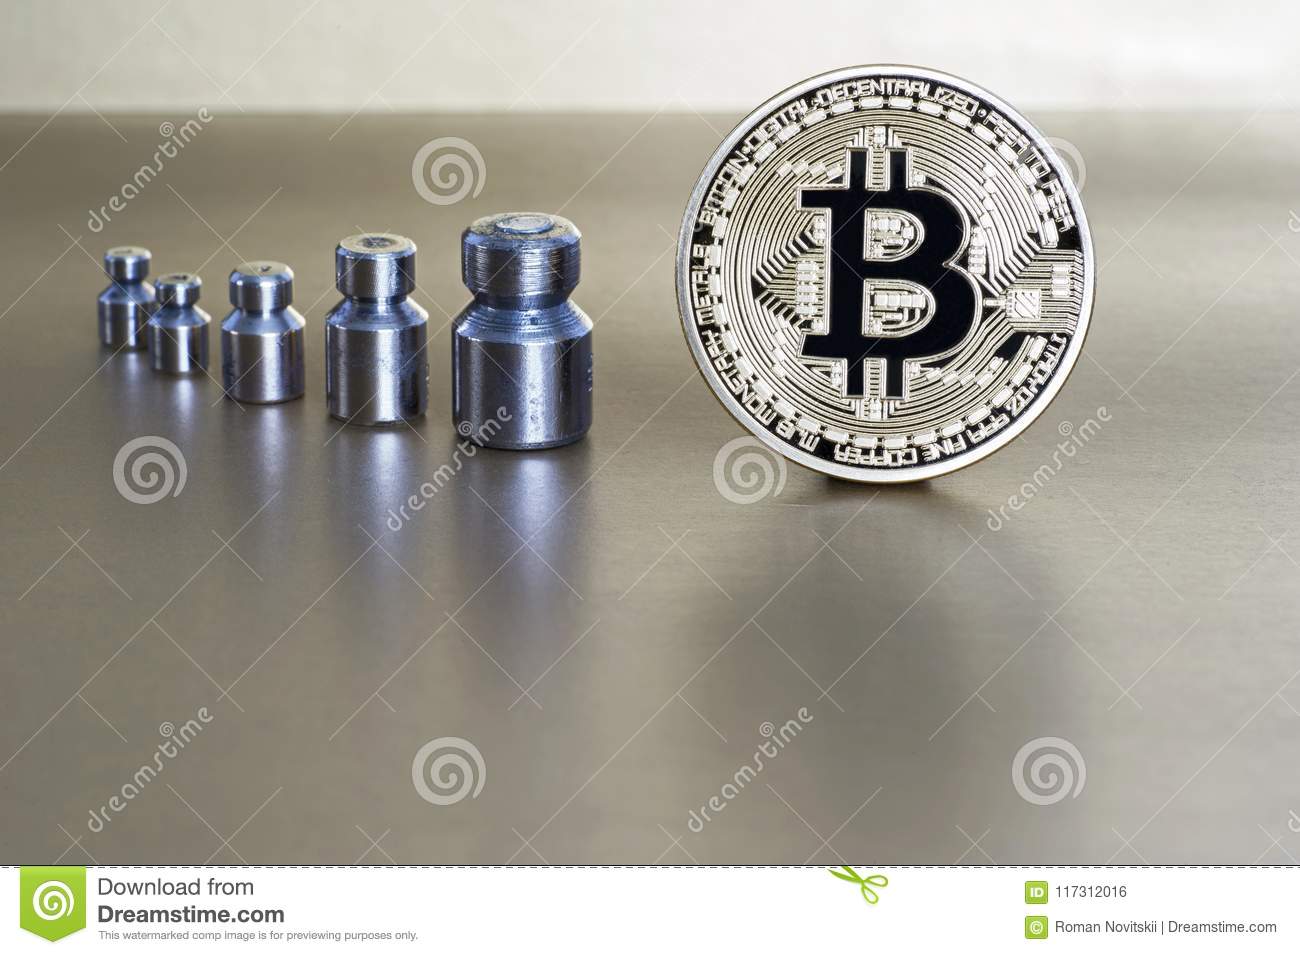 концепция уменьшения цены и тарифа cryptocurrency bitcoin при весы показывая вес